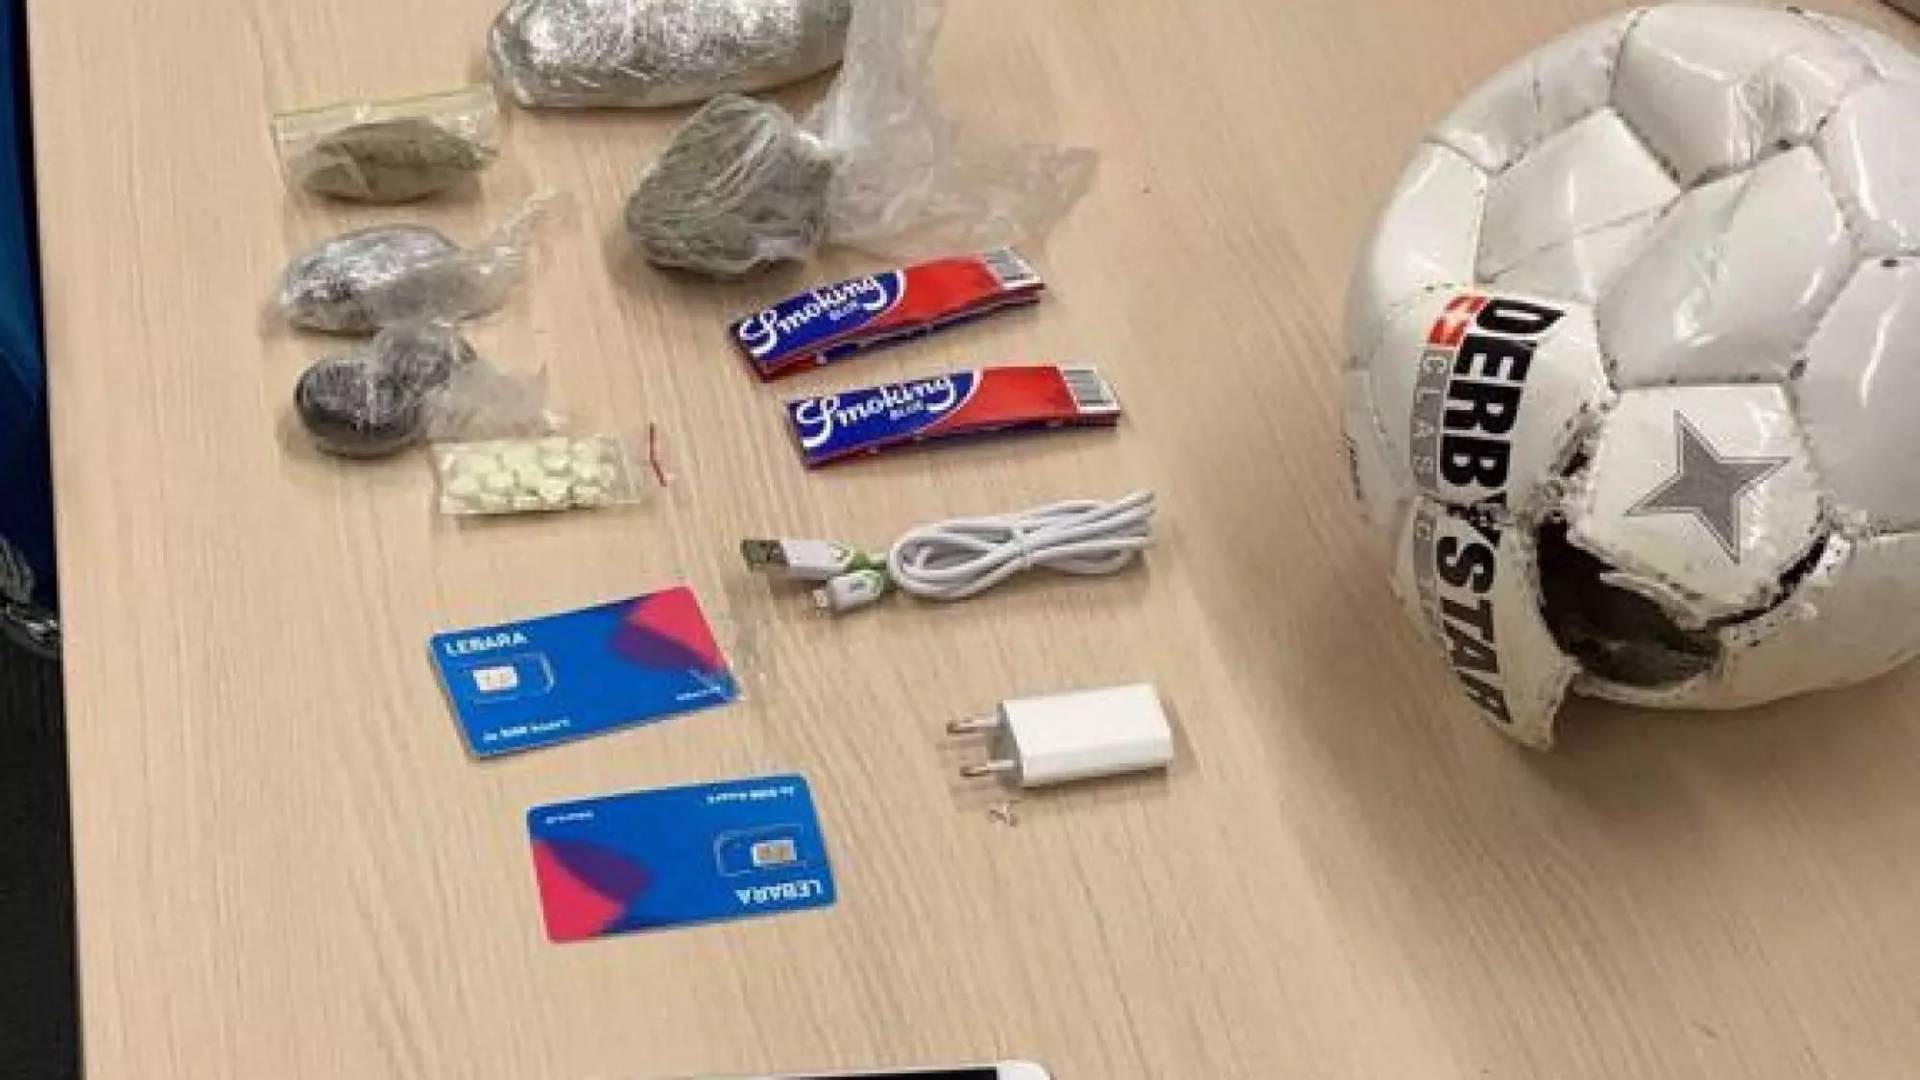 Voetbal met drugs, telefoons en simkaarten over gevangenismuur Zaanstad getrapt